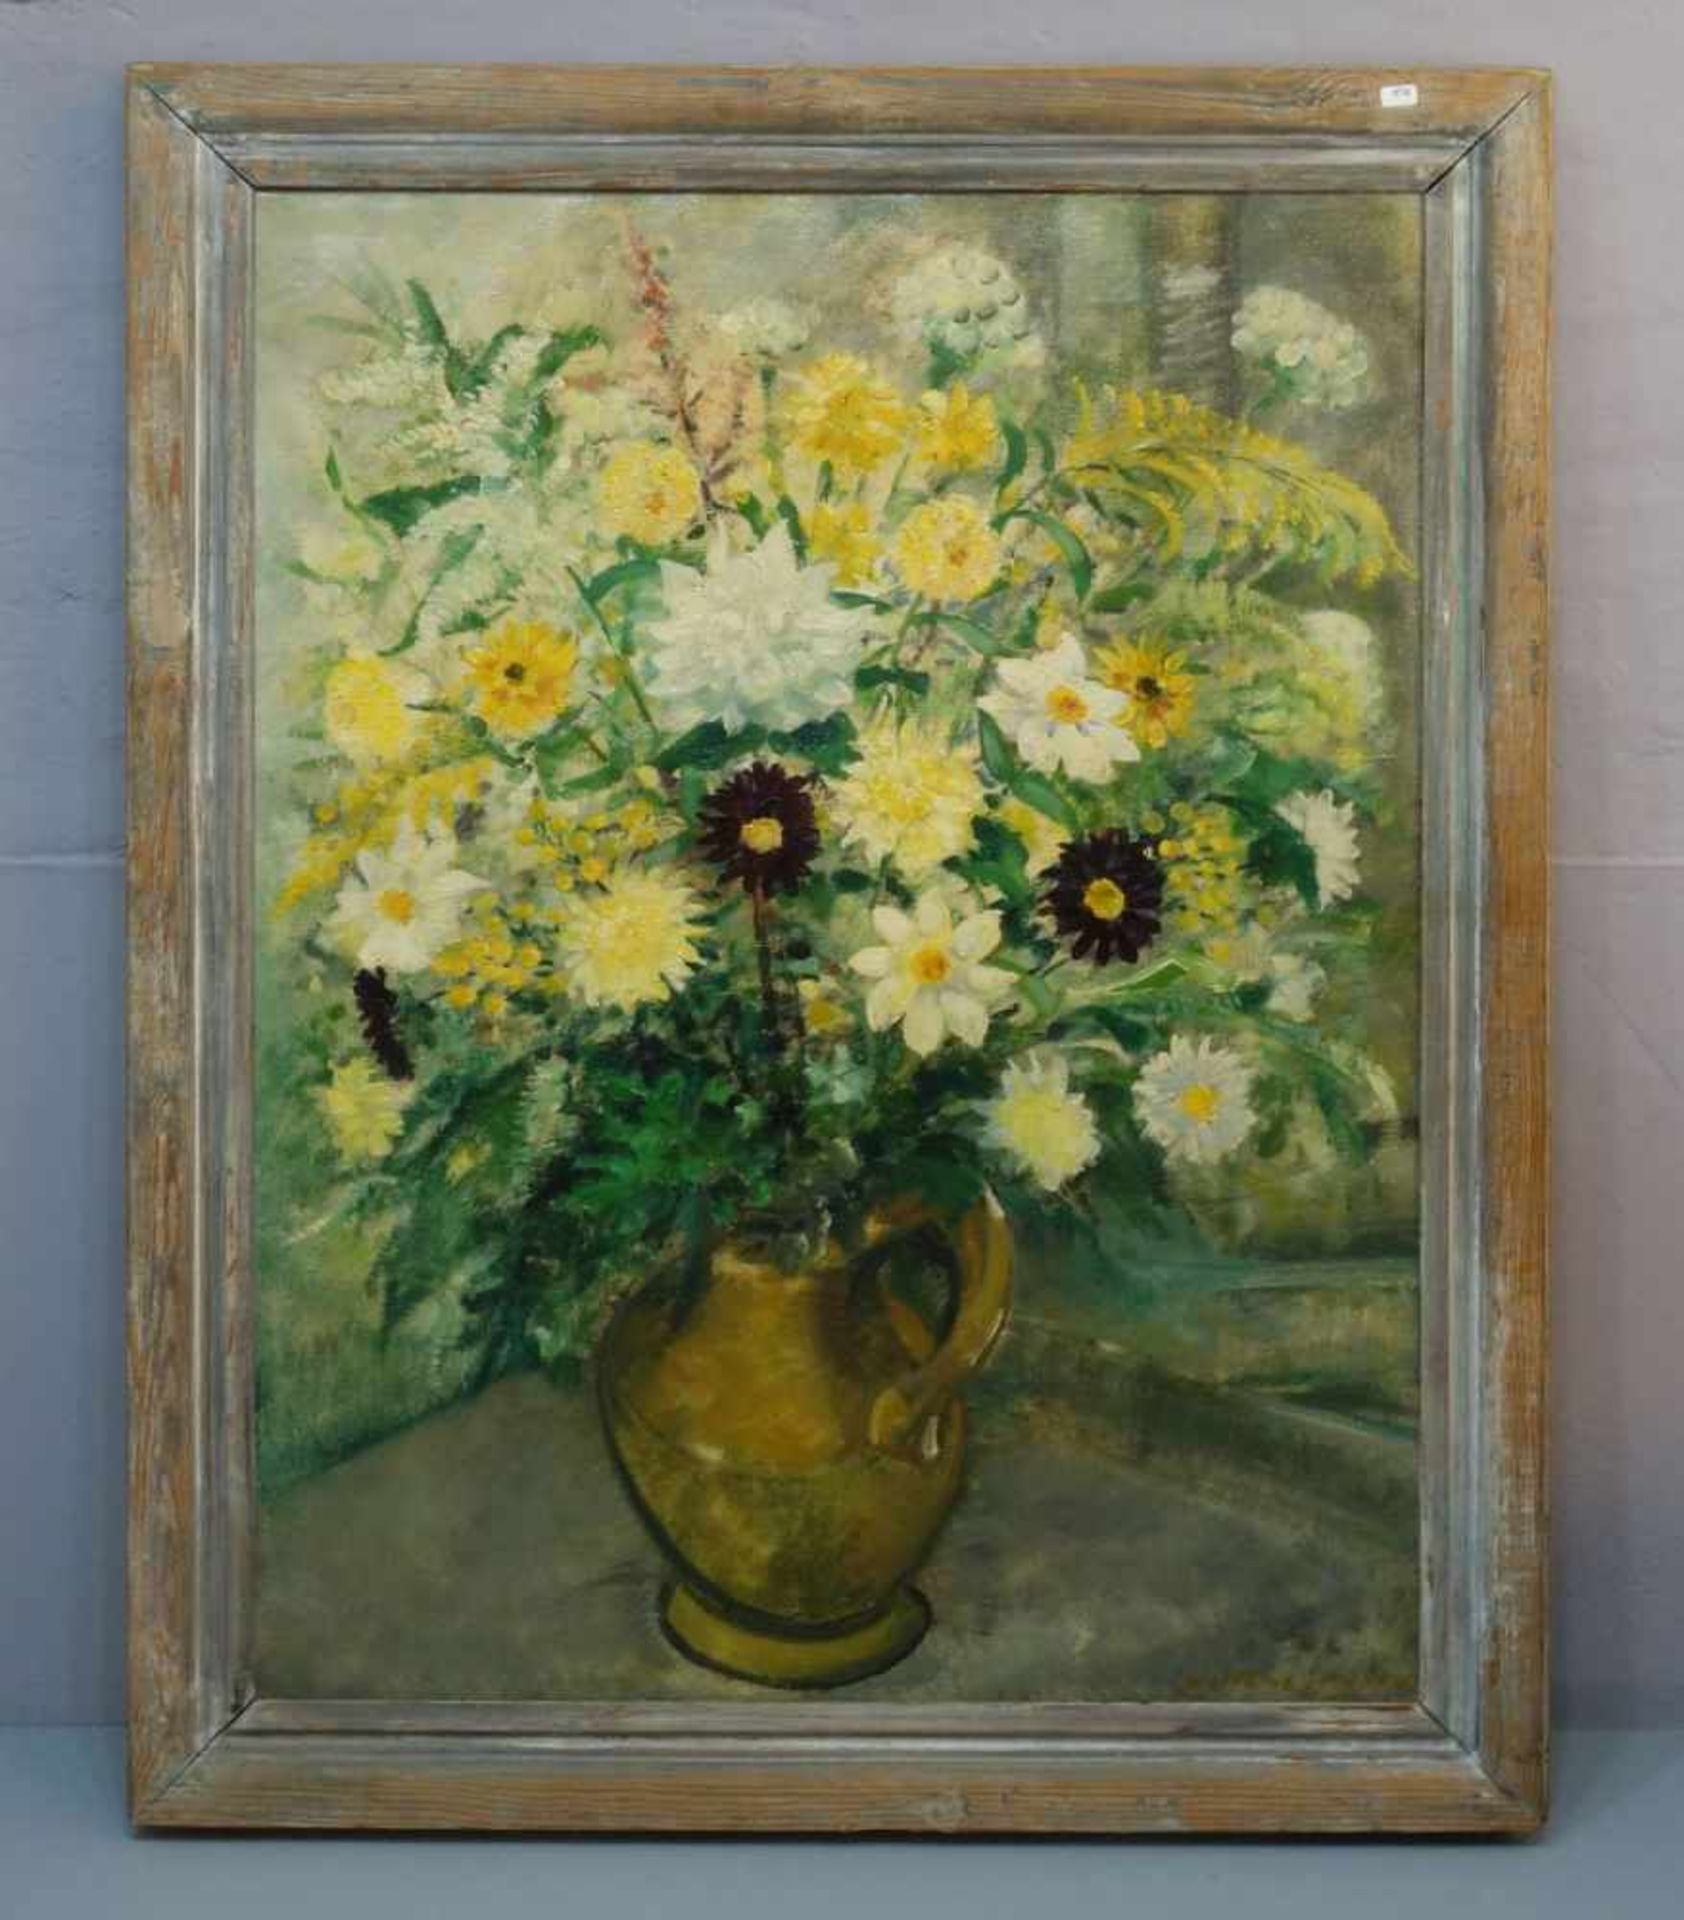 MEINE JANSEN, JAN (Meppel 1908-1994 Driebergen), Gemälde / painting: "Blumenstillleben", Öl auf